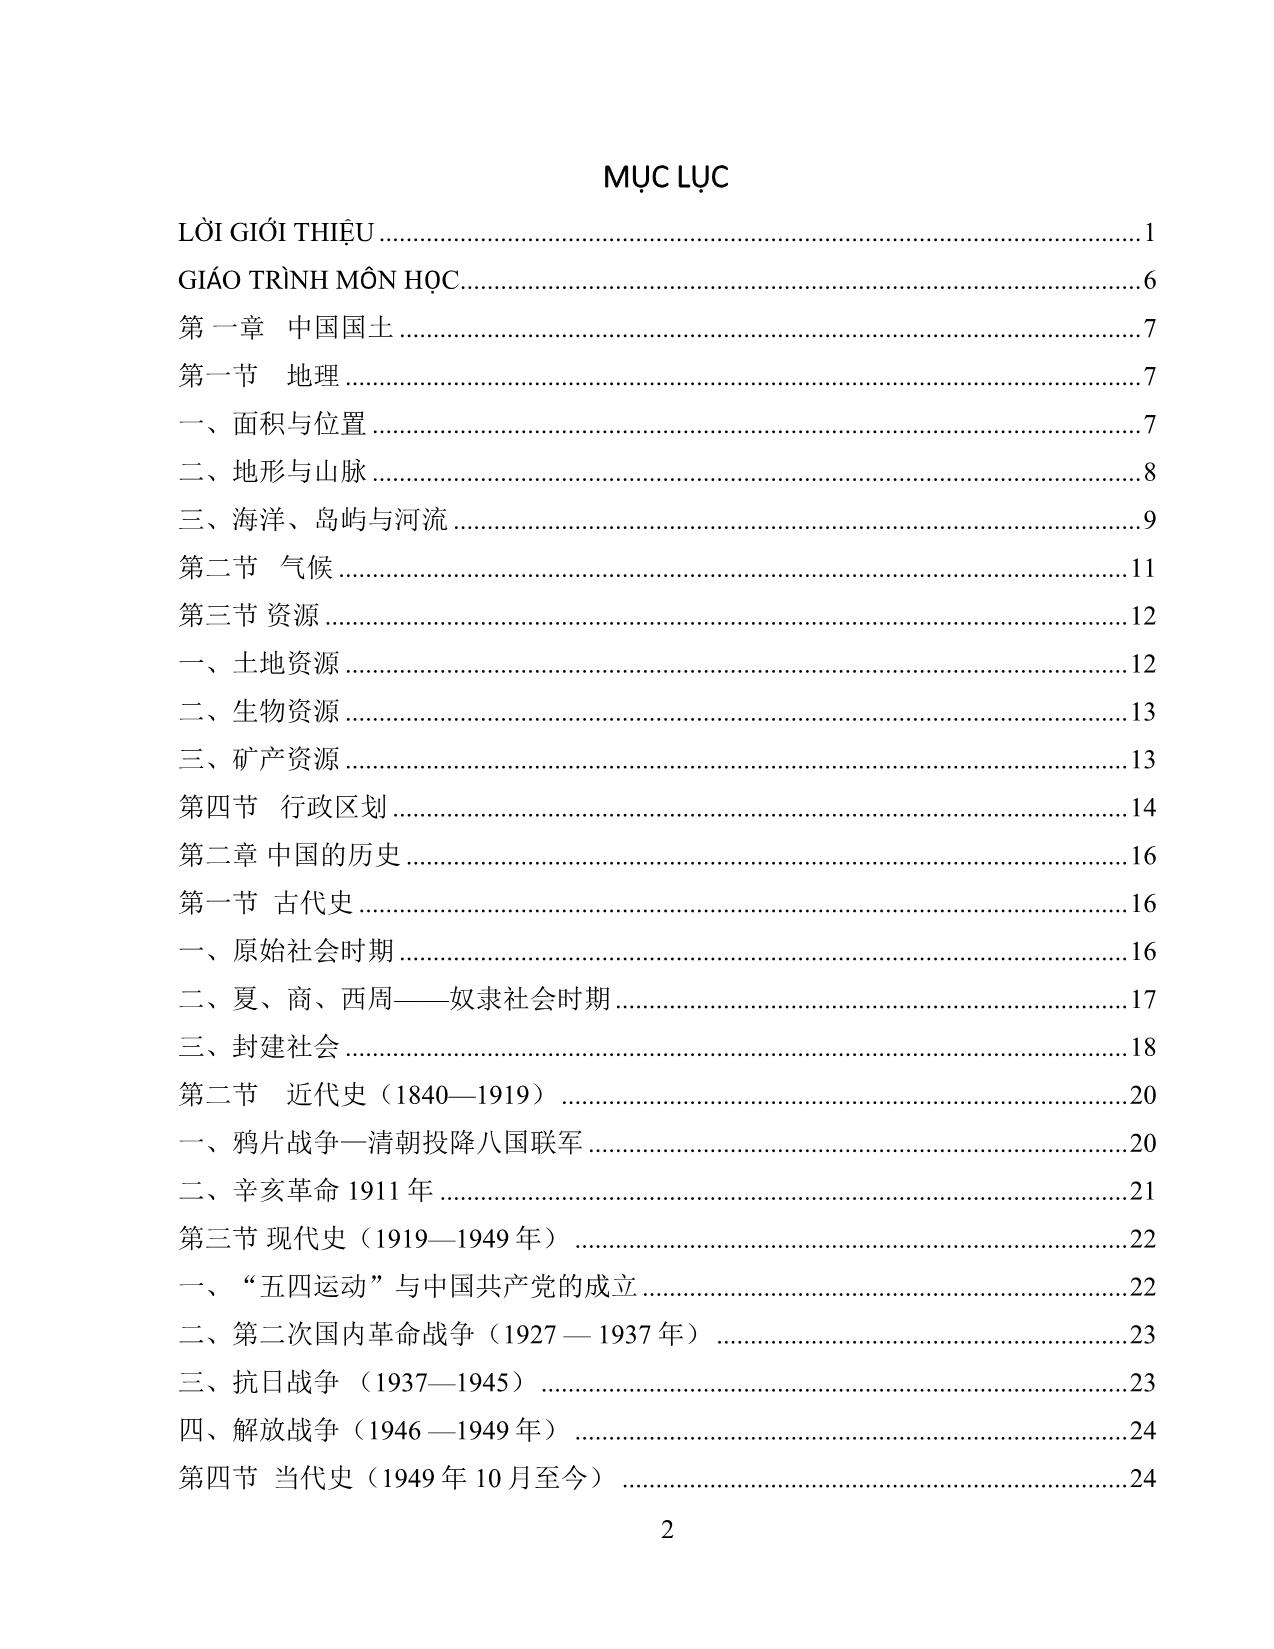 Giáo trình Đất nước học Trung Quốc trang 4